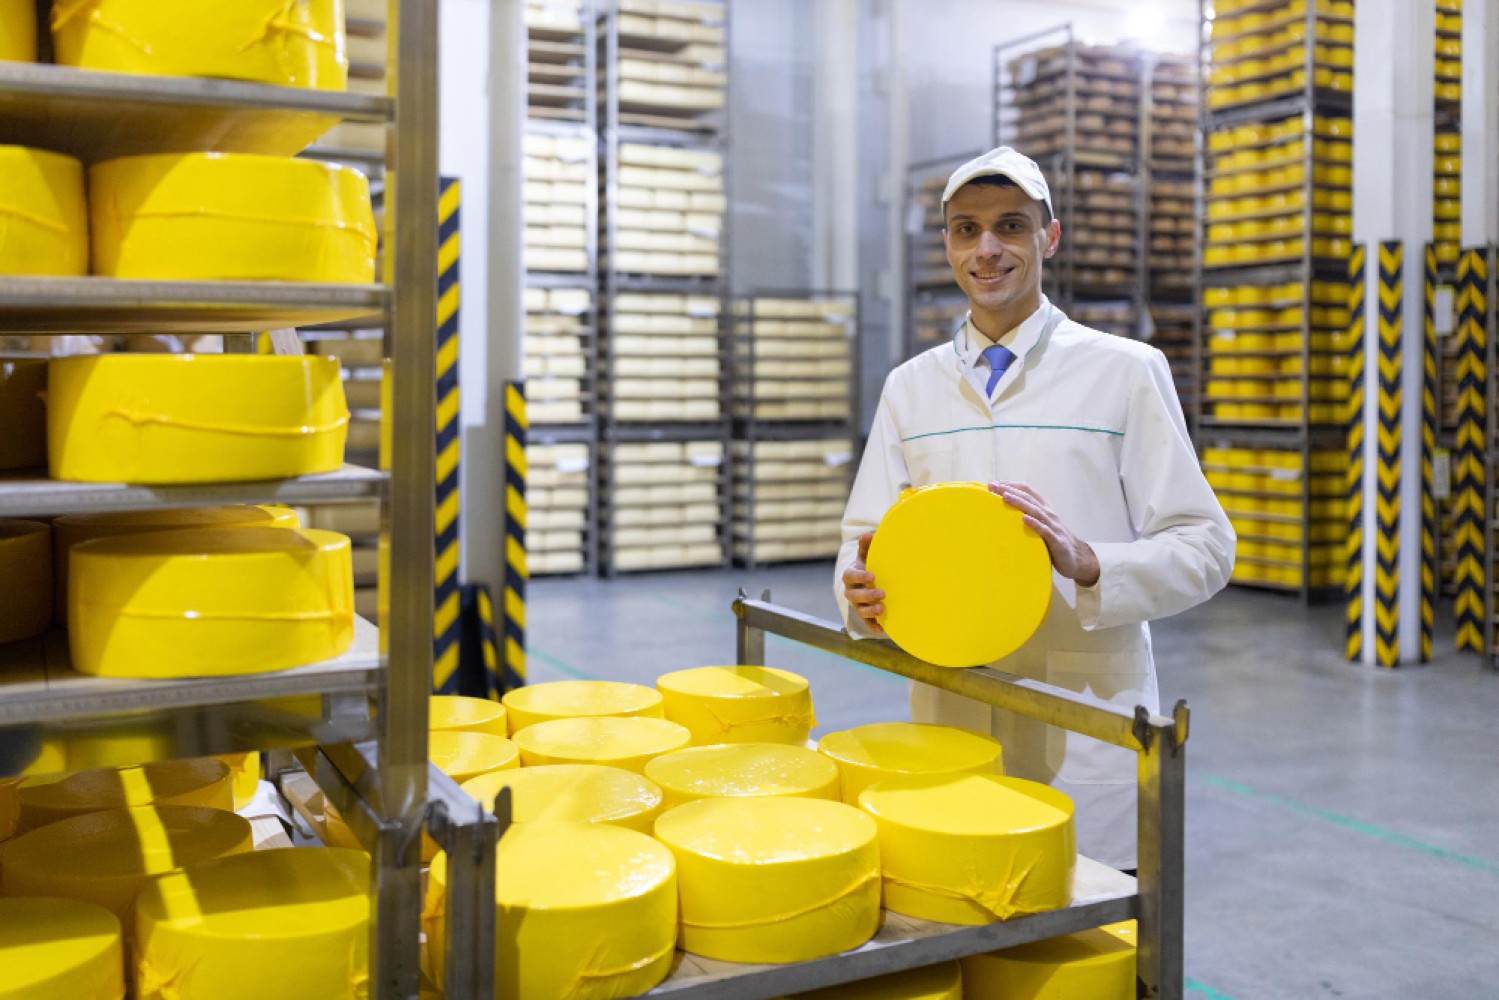 Изготовление рассольных сыров – важный сегмент в молочной промышленности. Эта статья расскажет вам обо всех нюансах этого процесса, от начальной стадии до окончательного продукта.